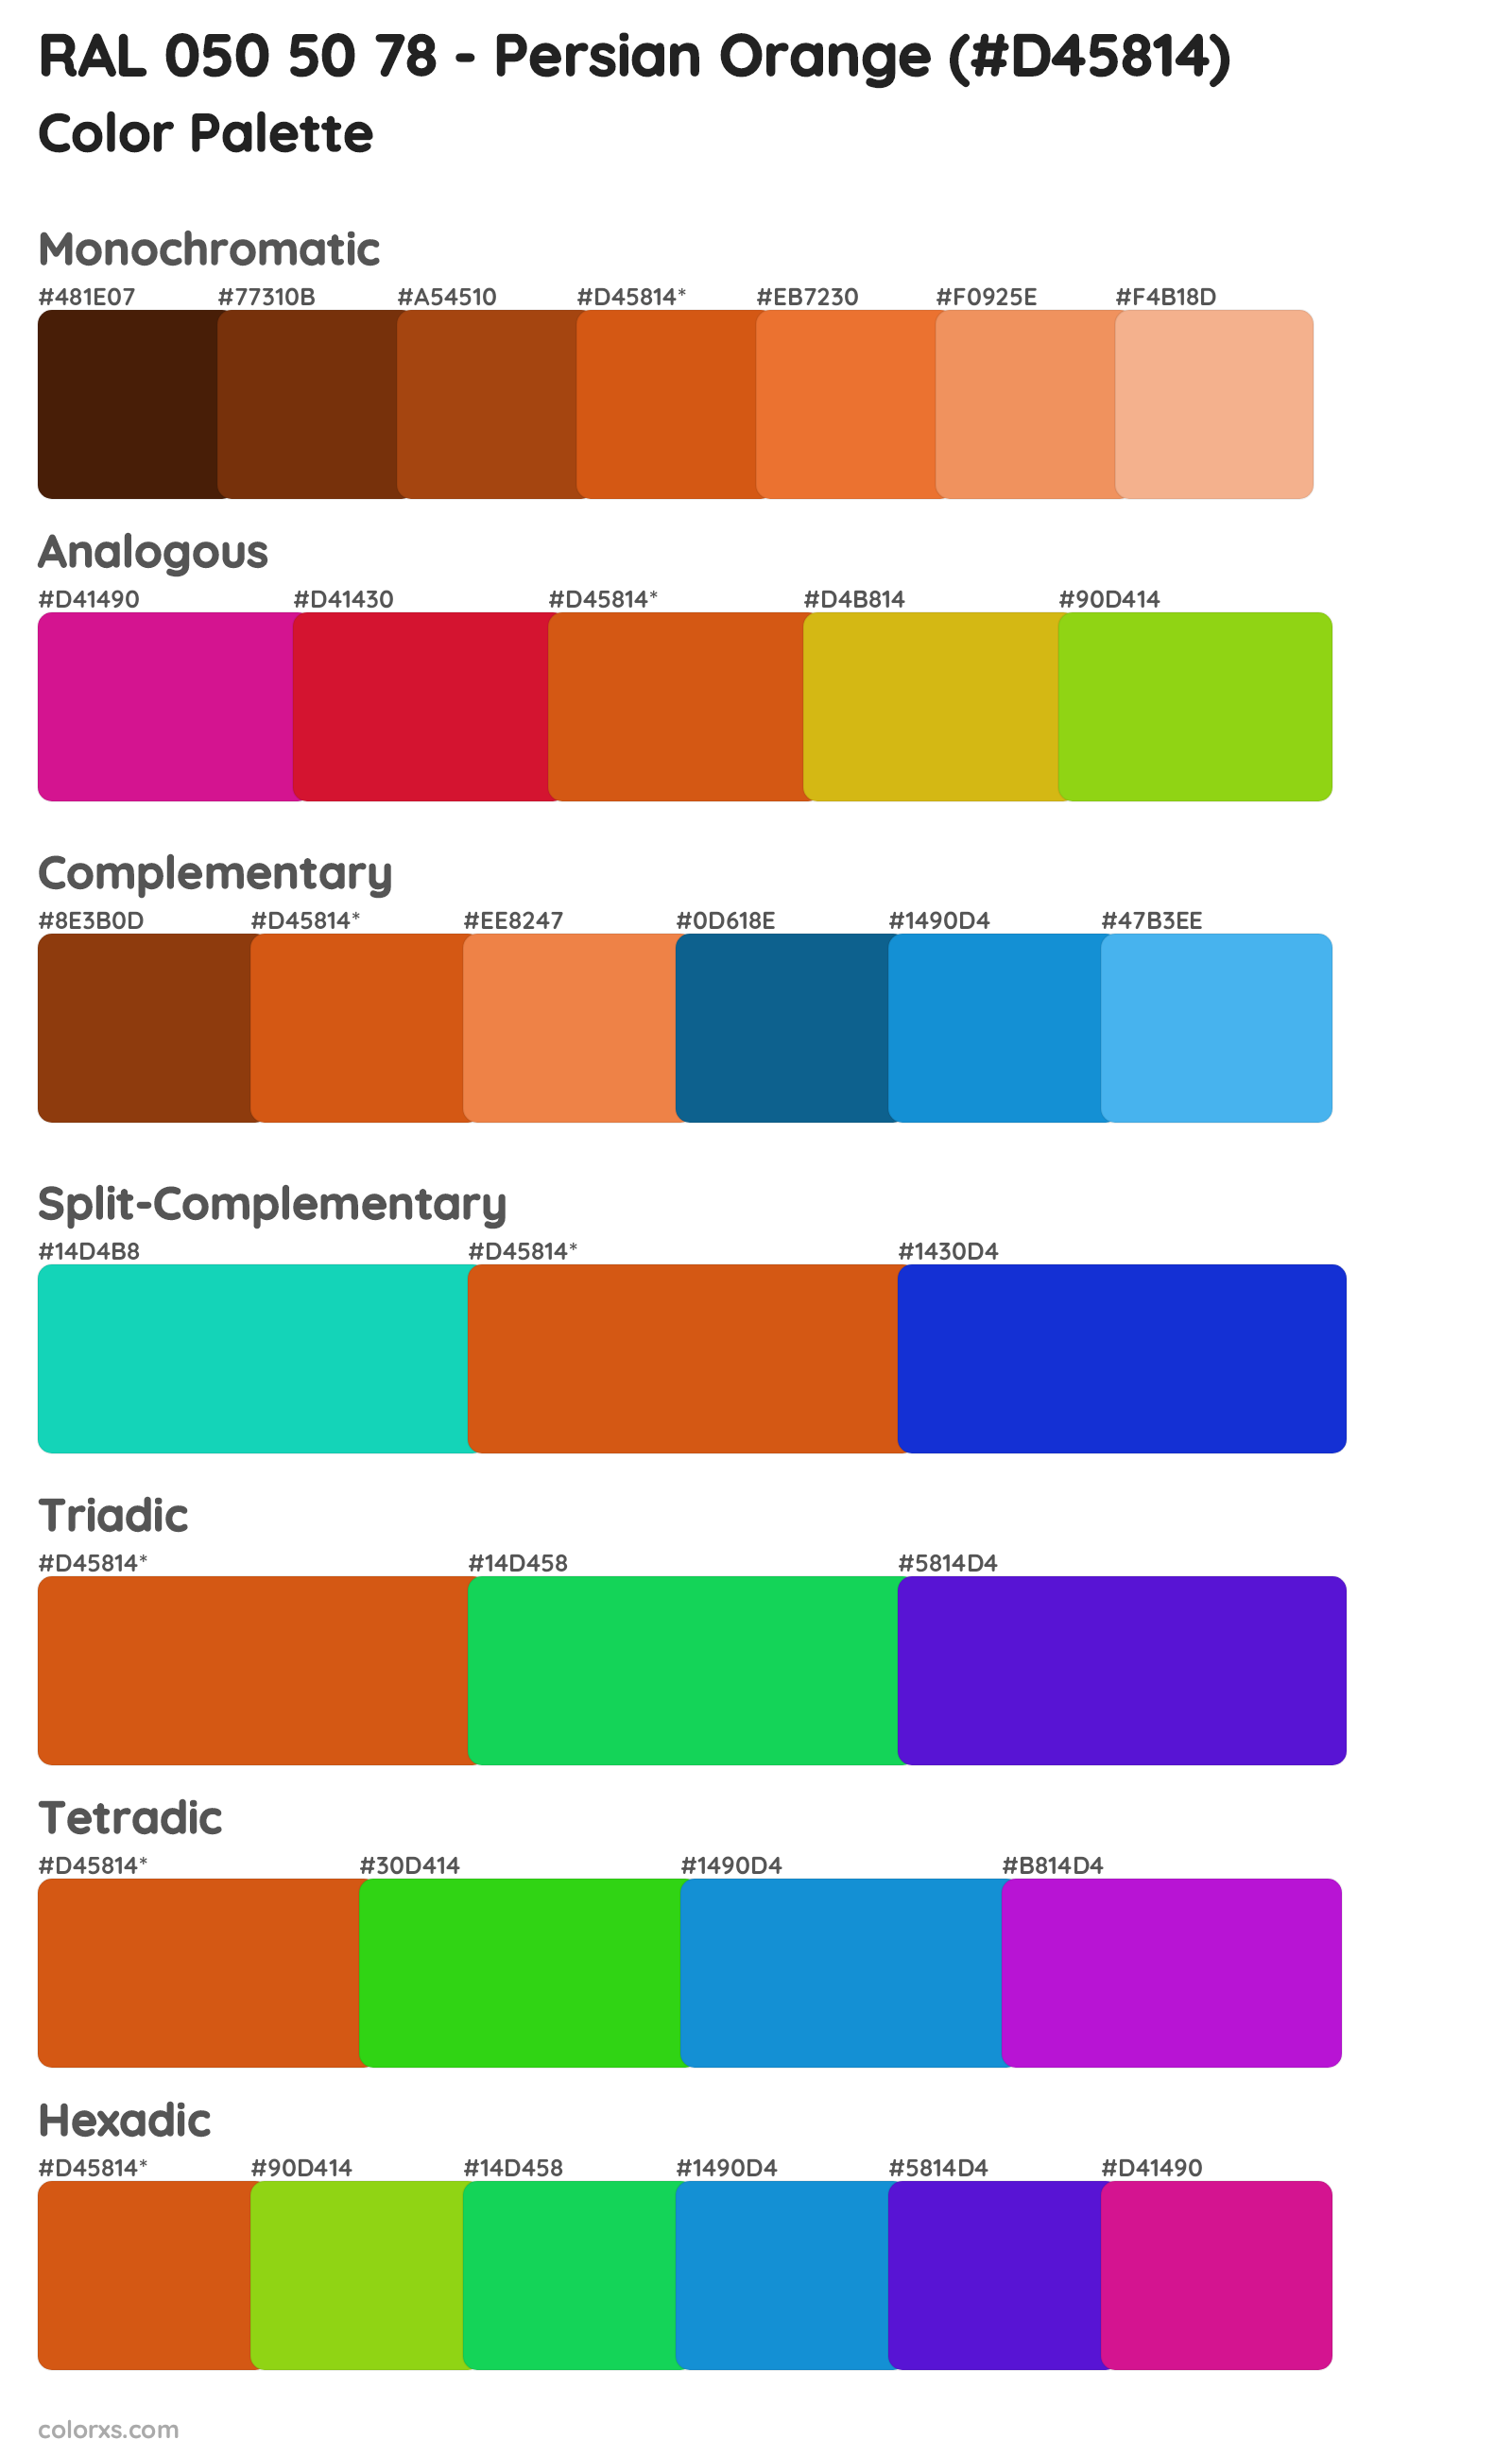 RAL 050 50 78 - Persian Orange Color Scheme Palettes